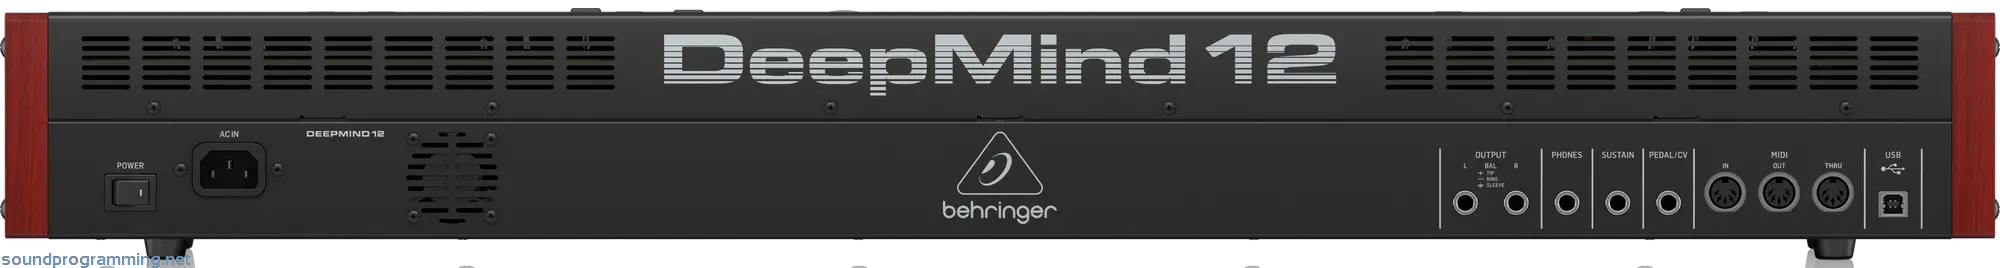 Behringer DeepMind 12 Back View